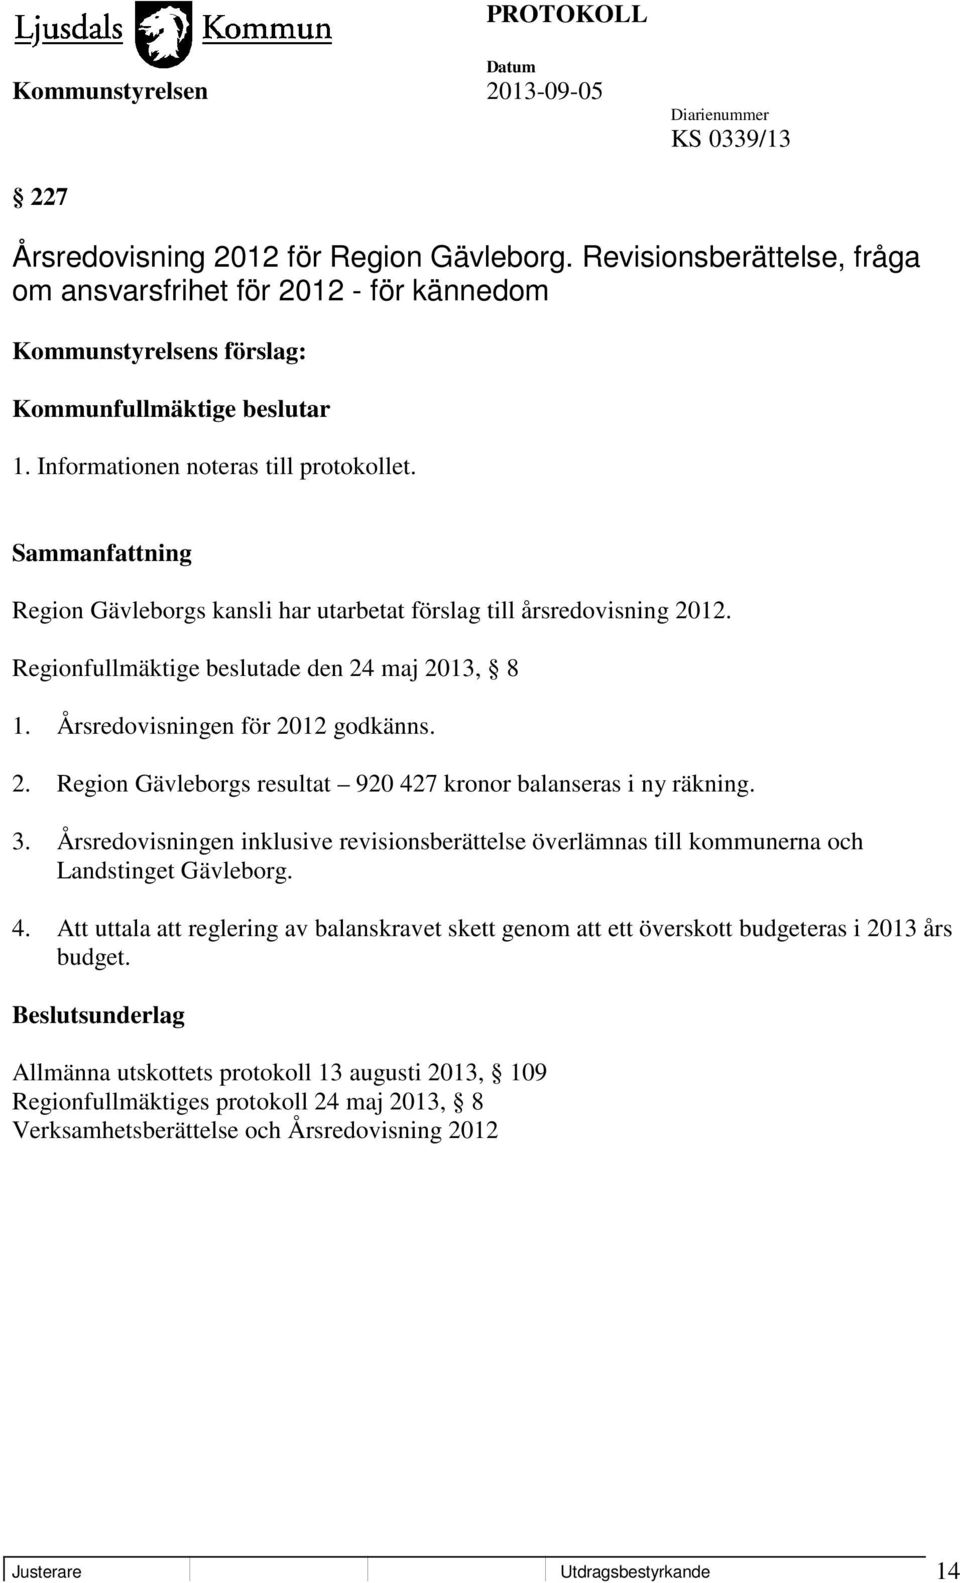 2. Region Gävleborgs resultat 920 427 kronor balanseras i ny räkning. 3. Årsredovisningen inklusive revisionsberättelse överlämnas till kommunerna och Landstinget Gävleborg. 4. Att uttala att reglering av balanskravet skett genom att ett överskott budgeteras i 2013 års budget.